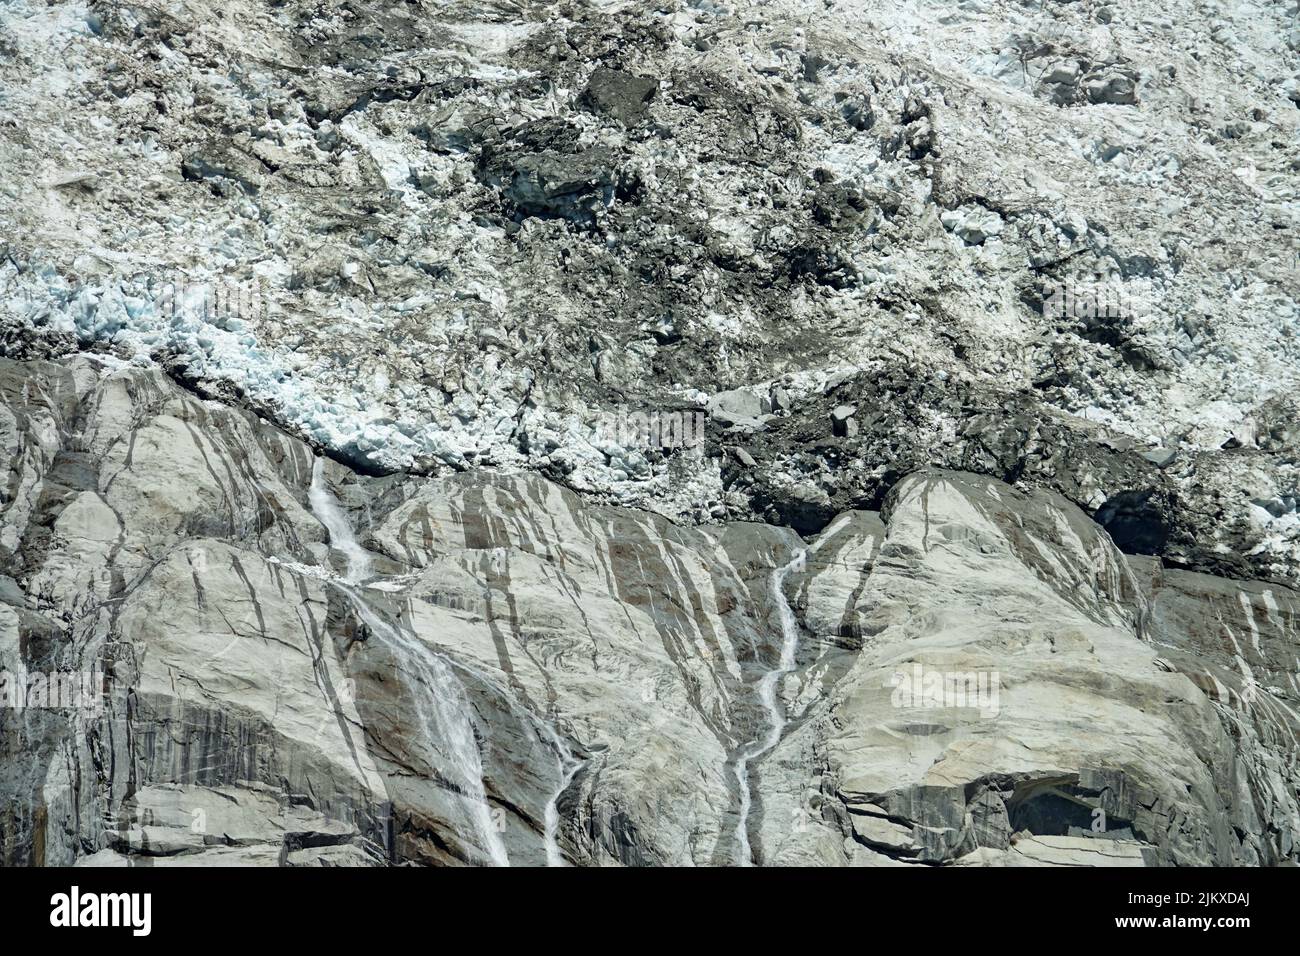 Changement climatique. Vue sur la fonte du glacier de Brenva créant de grandes cascades. Courmayeur, Italie Banque D'Images